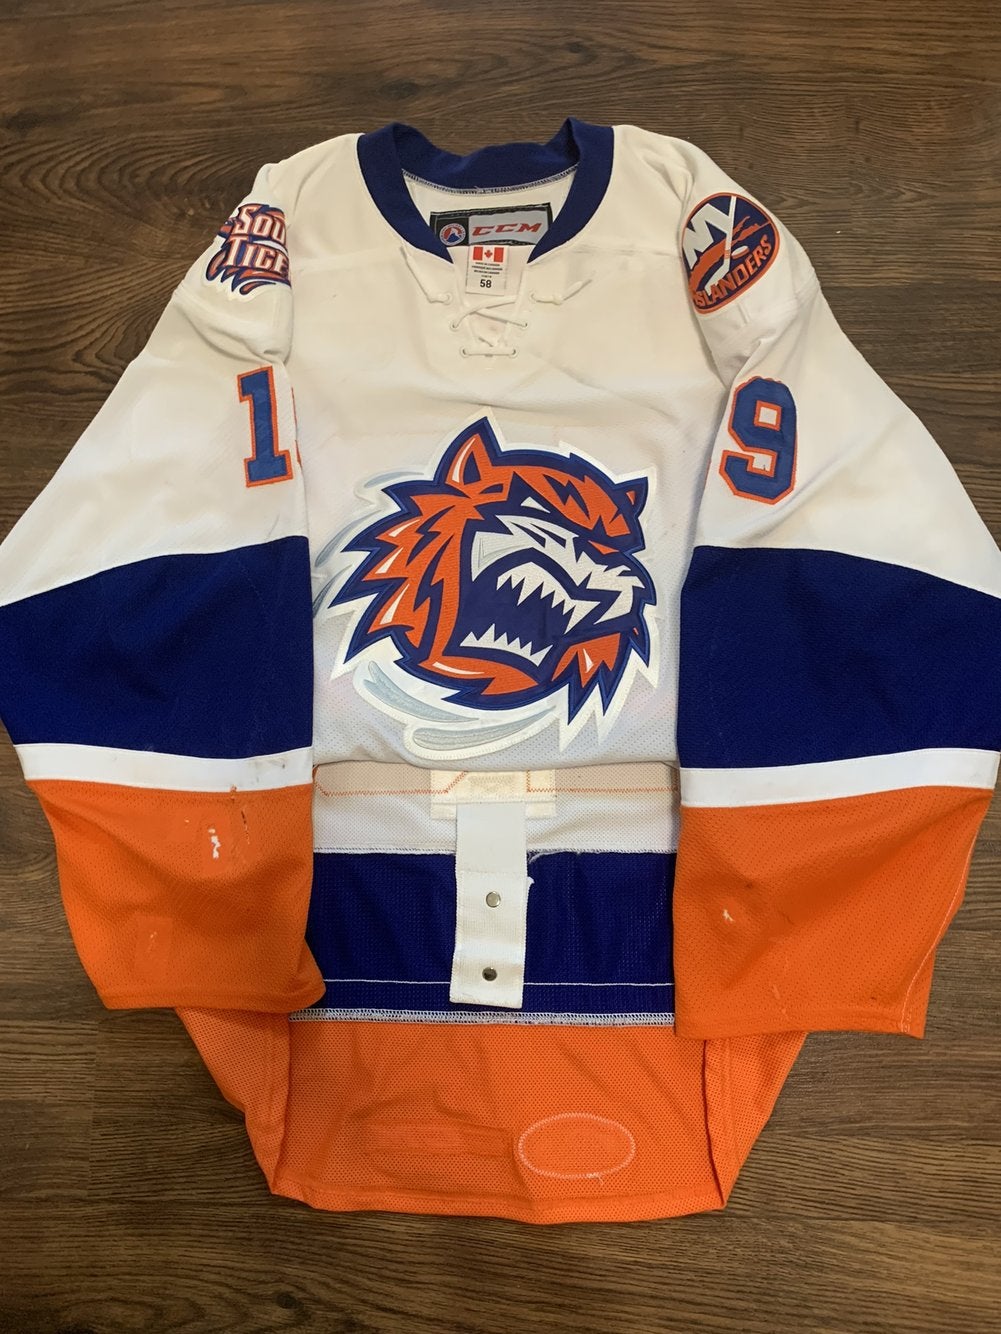 Tigers gear